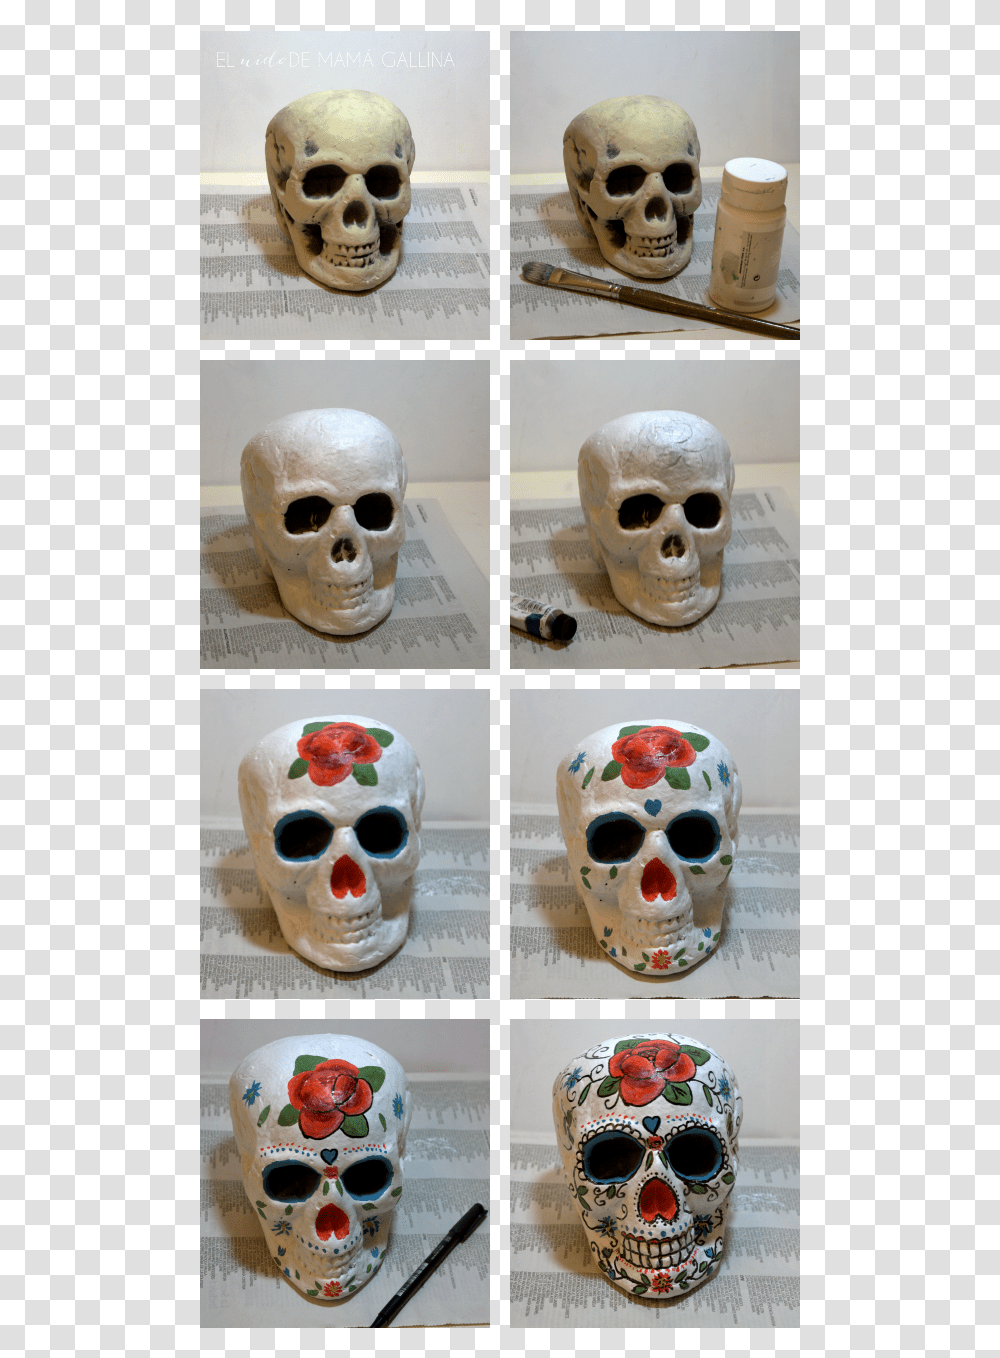 Sugar Skull Halloween Makeup Catrinas Calaveras De Unicel Decoradas, Head, Sunglasses, Jaw, Dog Transparent Png